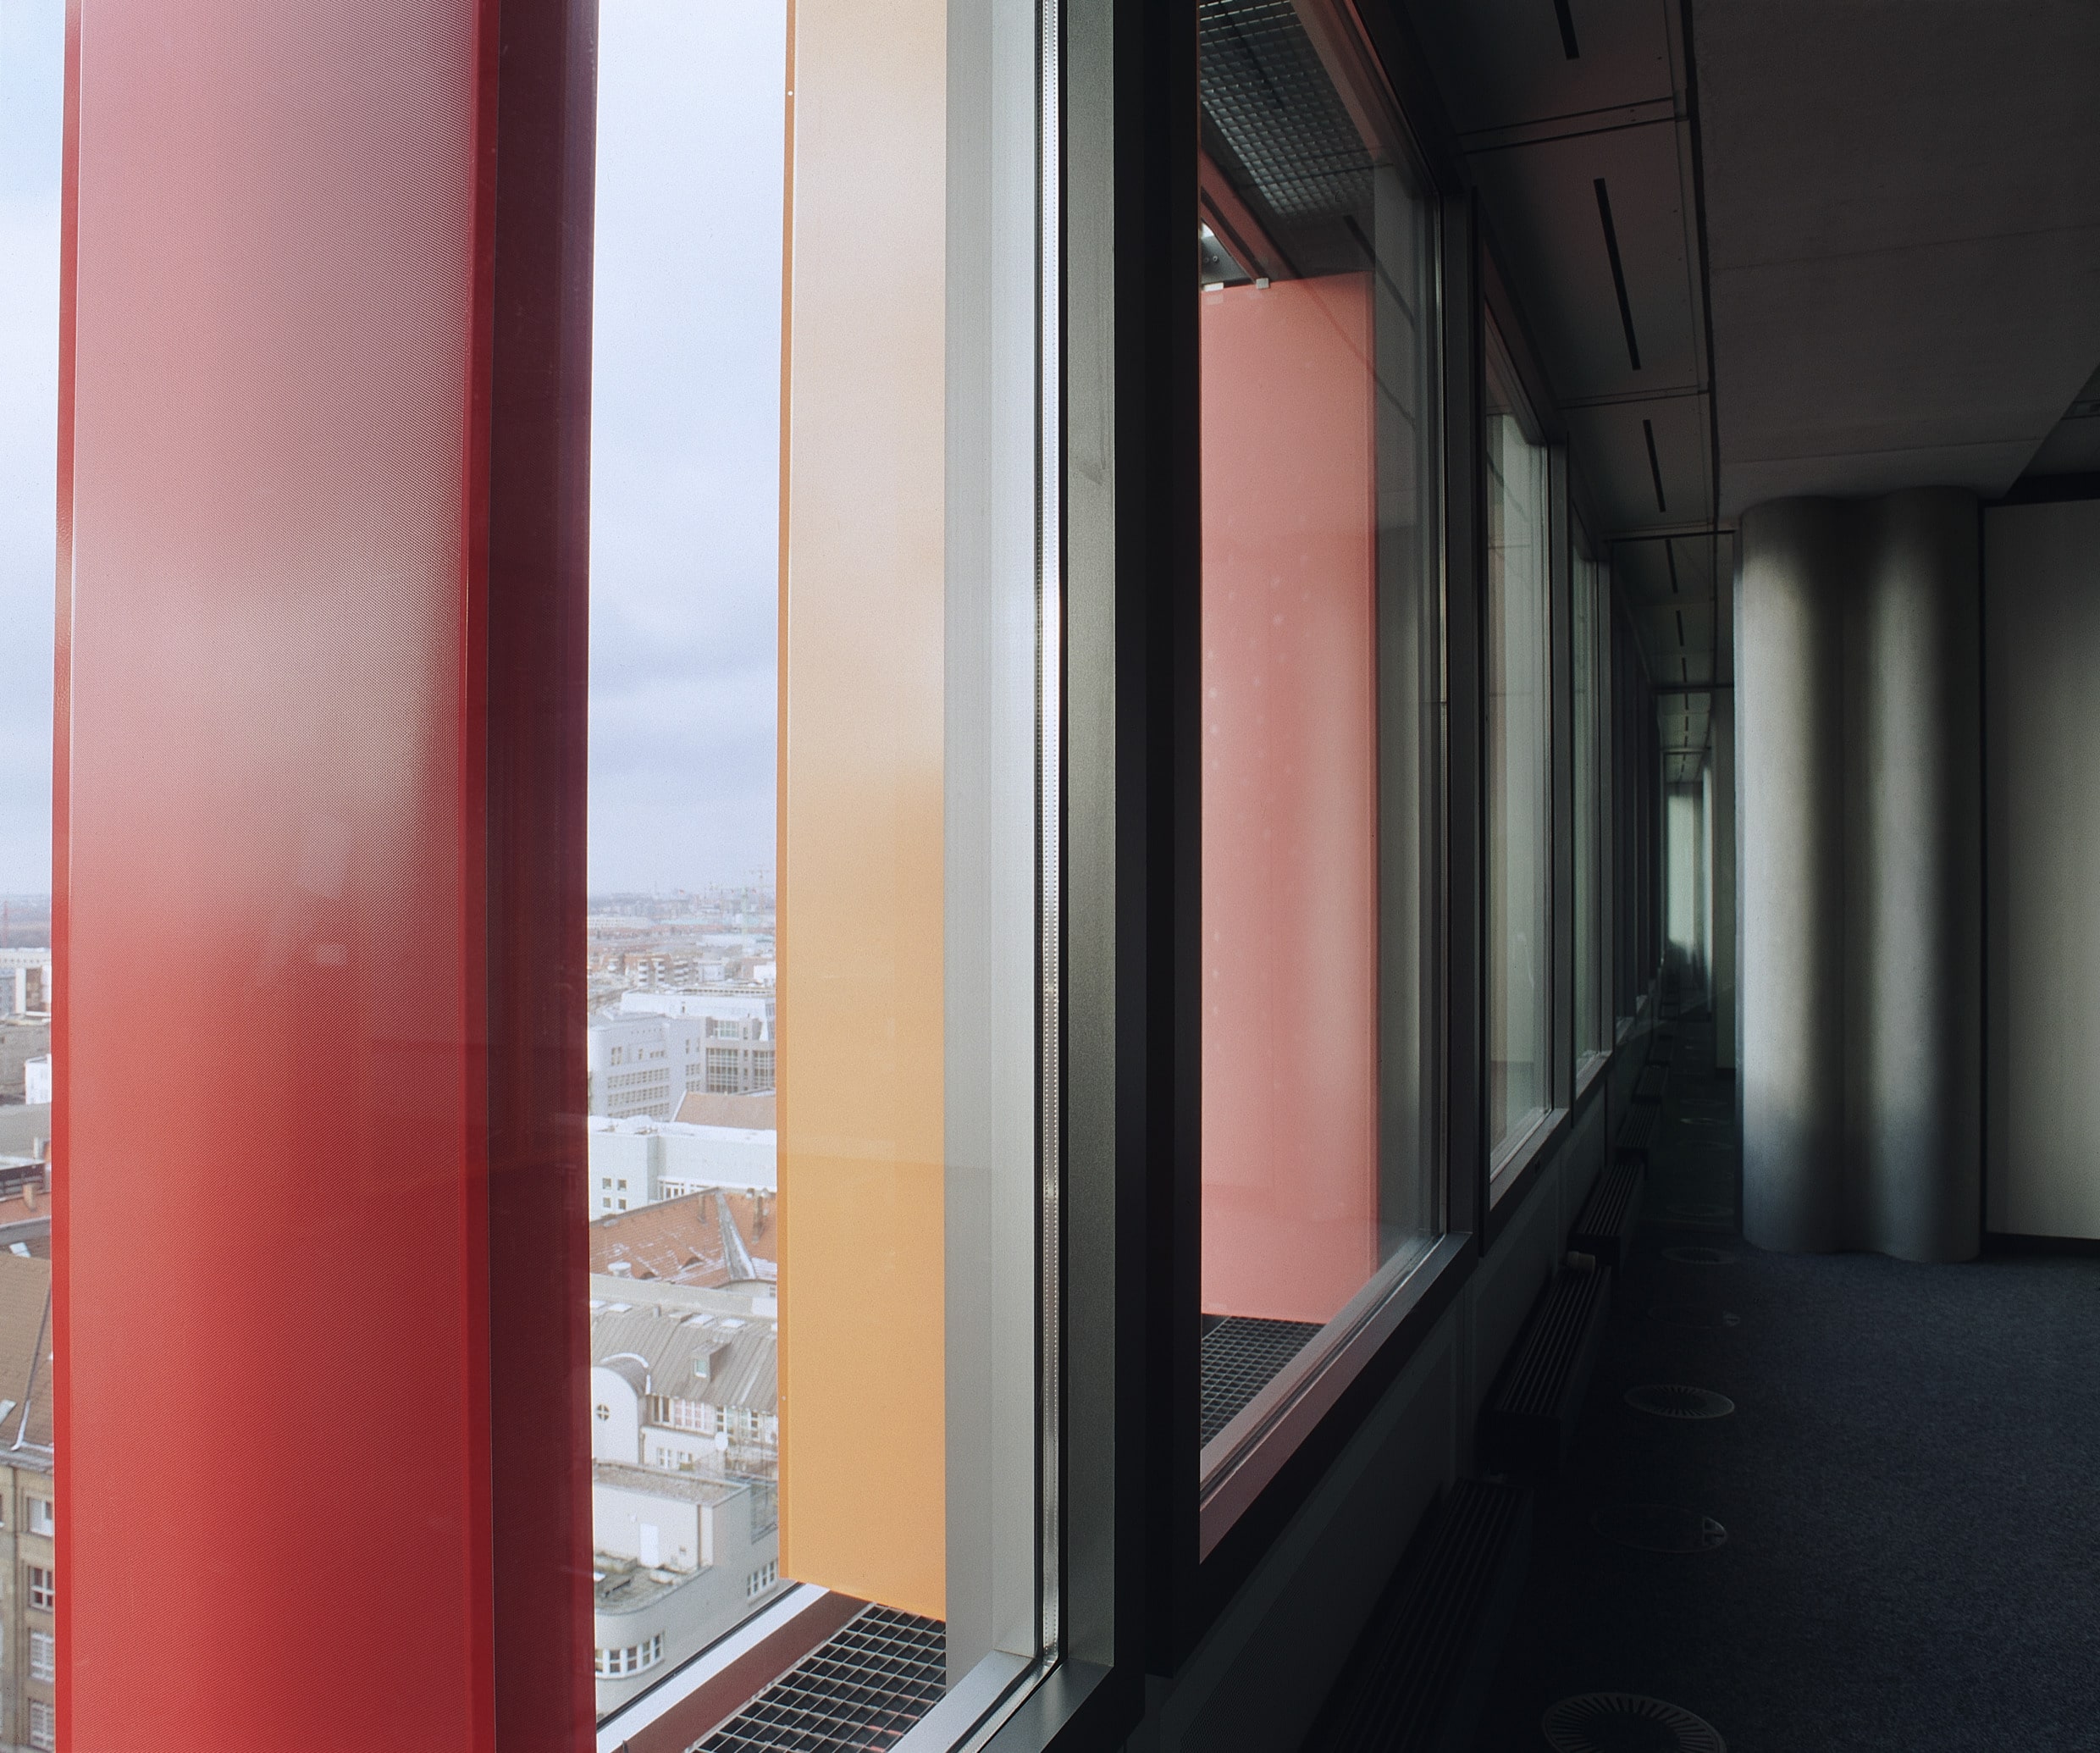 Die ehemalige GSW-Hauptverwaltung, heute eher bekannt als Rocket Tower Berlin, soll eine neue Fassadengestaltung erhalten, die vom ursprünglichen Entwurf abweicht. Sauerbruch Hutton, die unsere aktuelle Juni-Ausgabe gastkuratiert, will die „grobe Entstellung des Gebäudes“ verhindern – mit einer Online-Petition. Foto: Annette Kisling